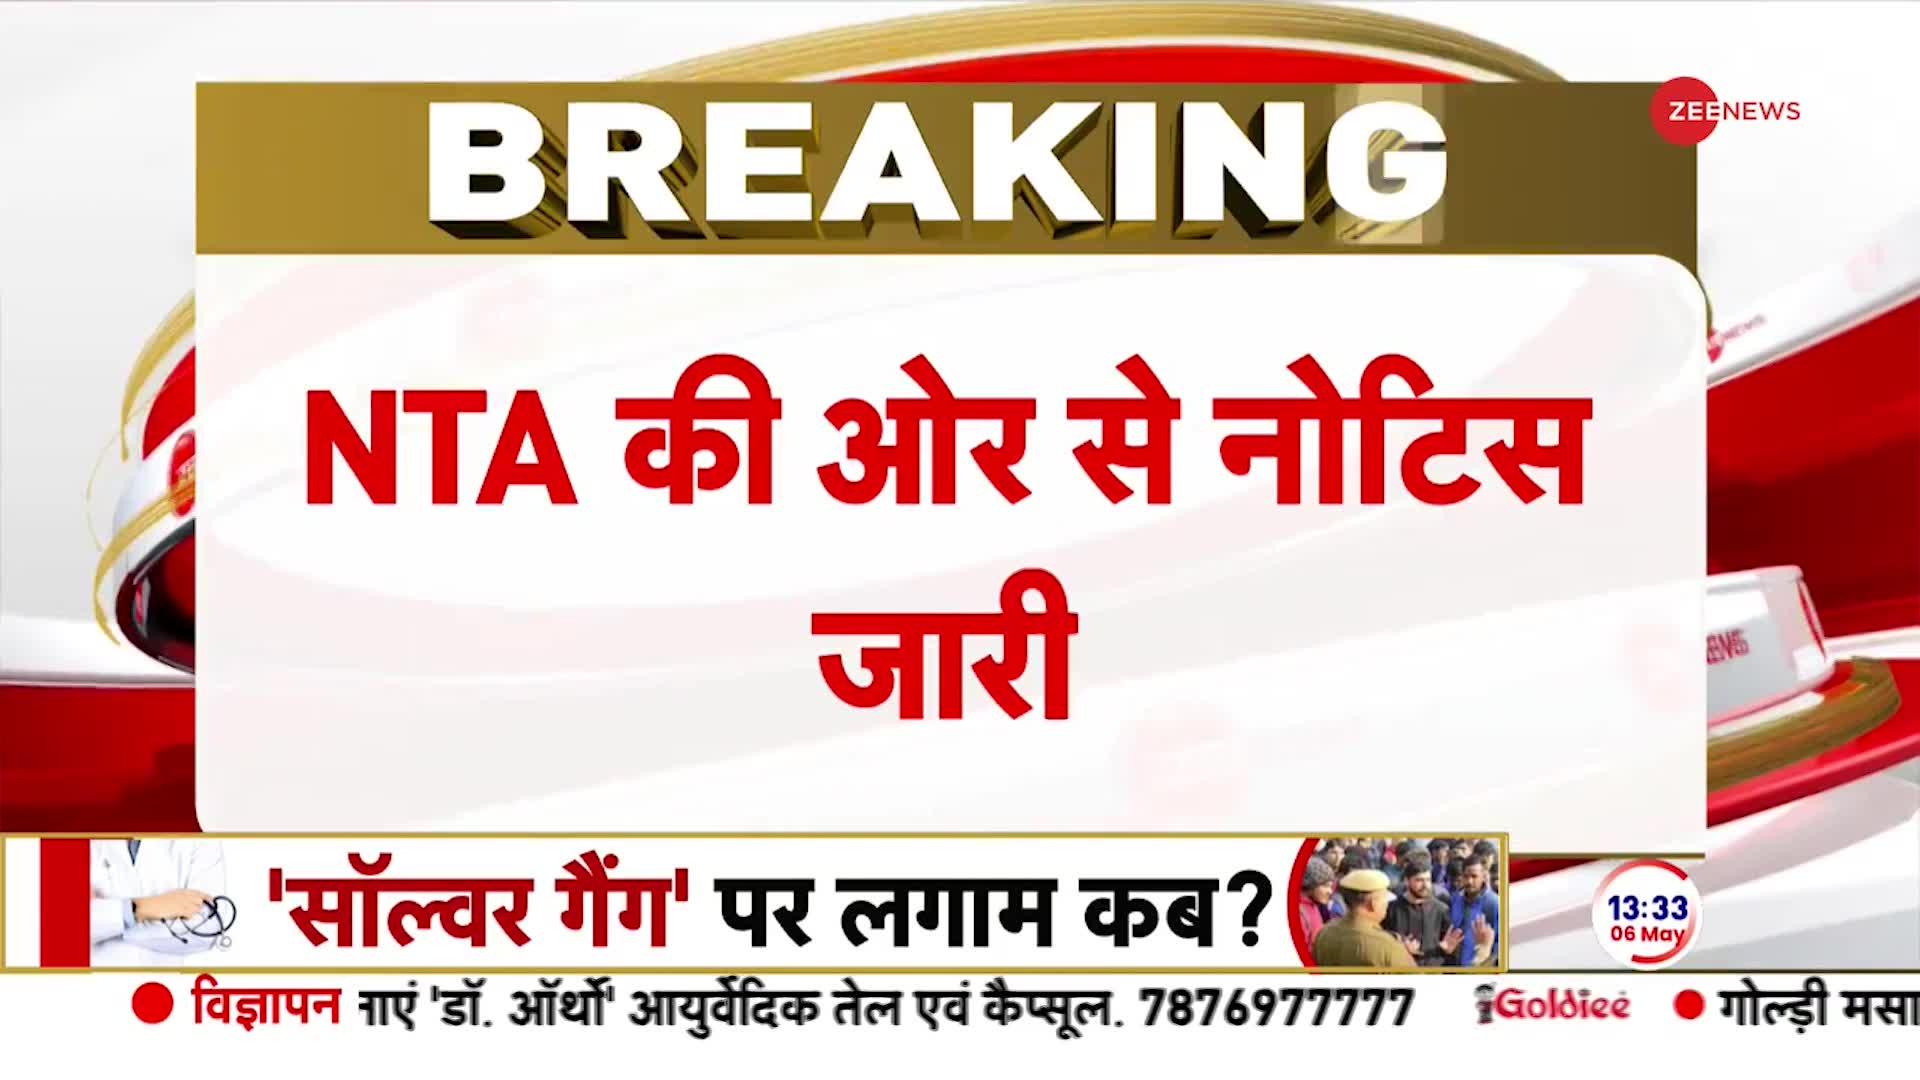 Rajasthan NEET Breaking News: 'NEET' एंड CLEAN परीक्षा पर सवाल!